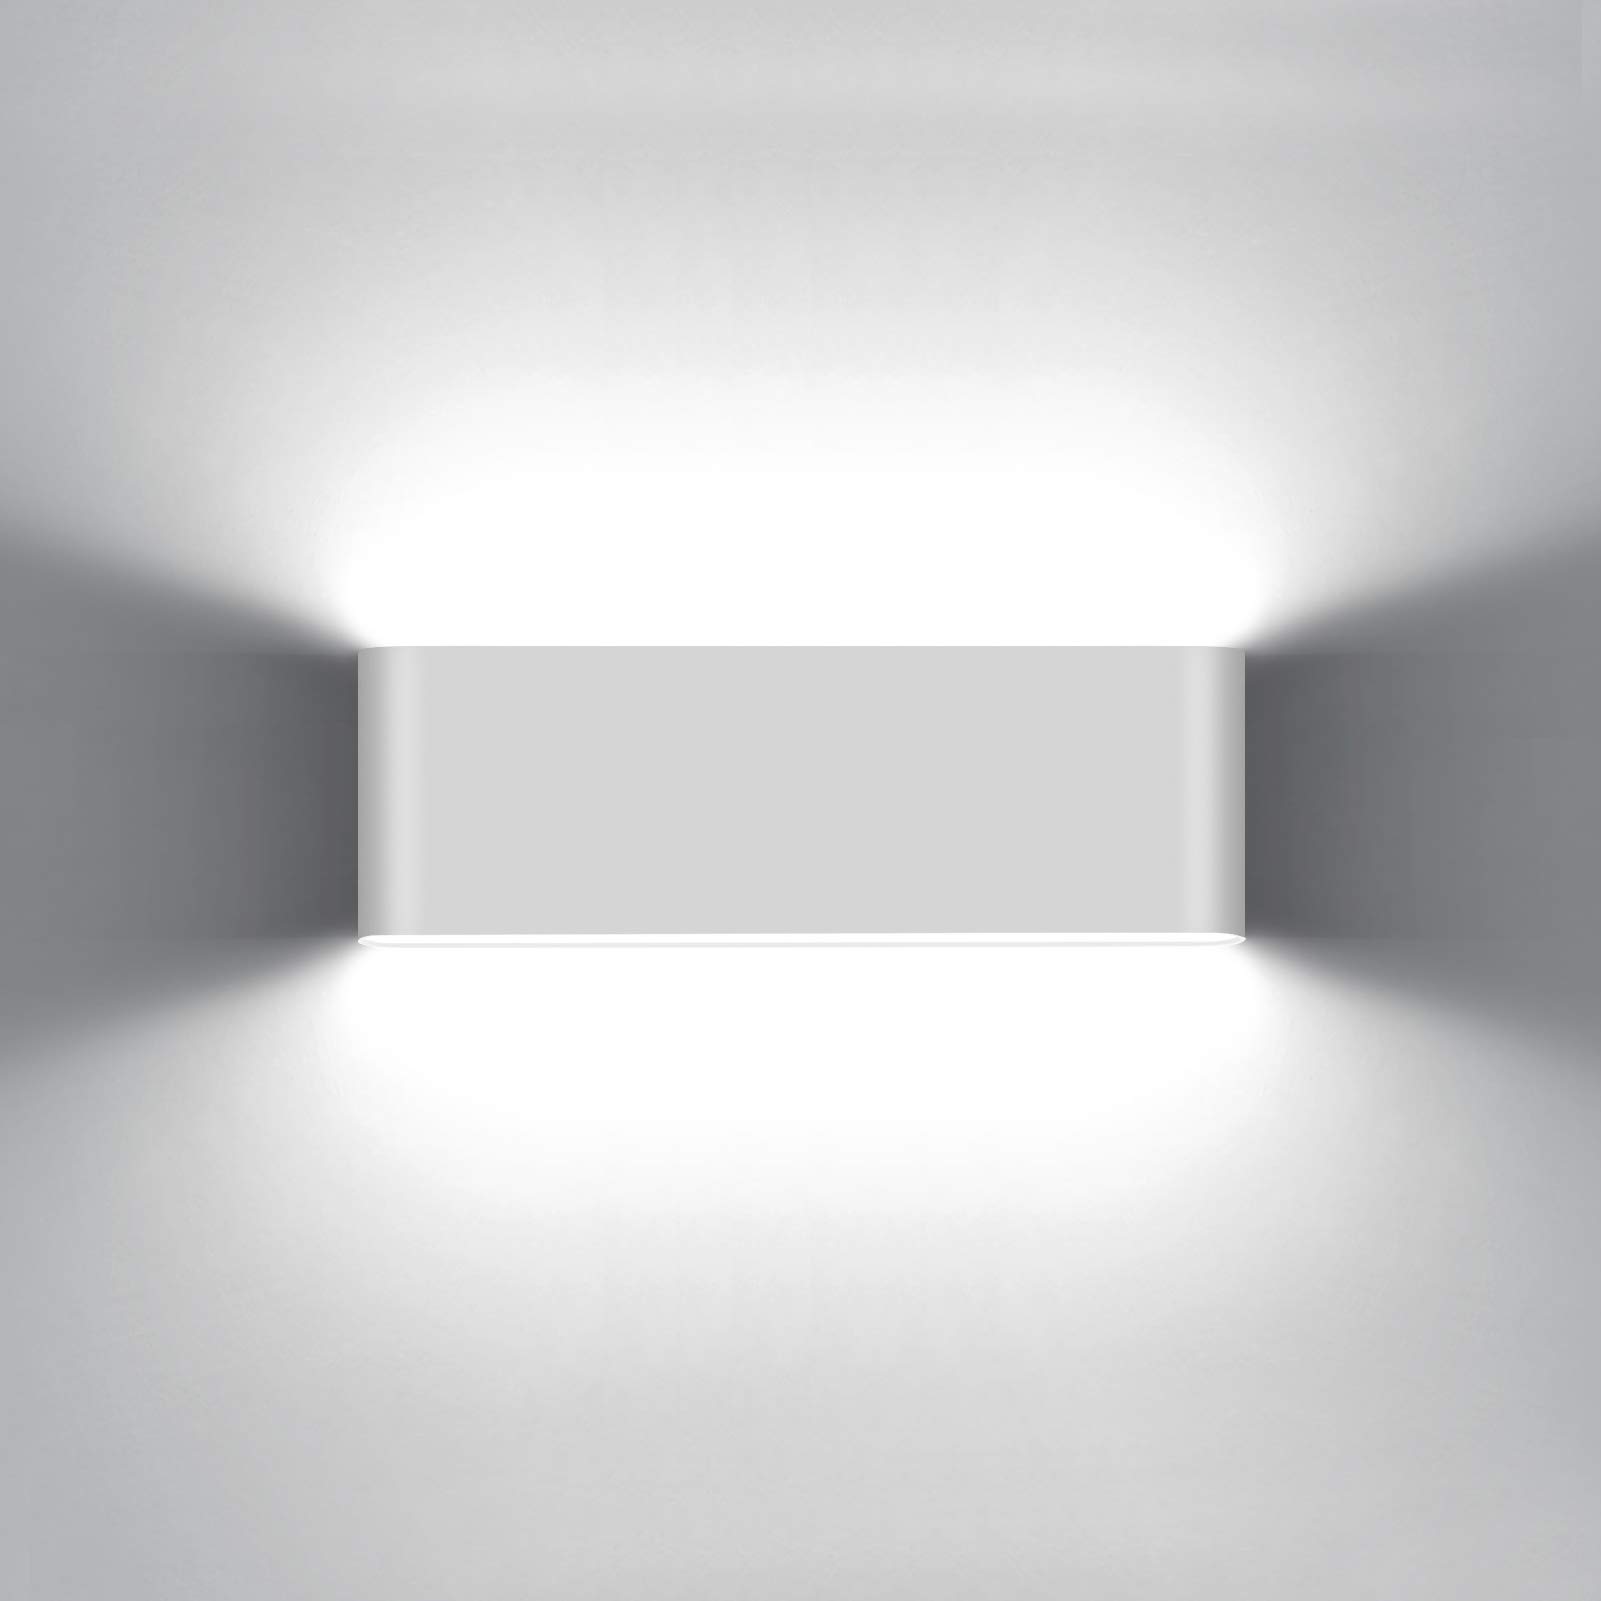 KAWELL 20W Modern Wandlampe LED Wandleuchte Up Down Aluminium Wandbeleuchtung Wasserdicht IP65 Innen Außen für Schlafzimmer Badezimmer Wohnzimmer Flur Treppen Korridor, Weiß 6000K